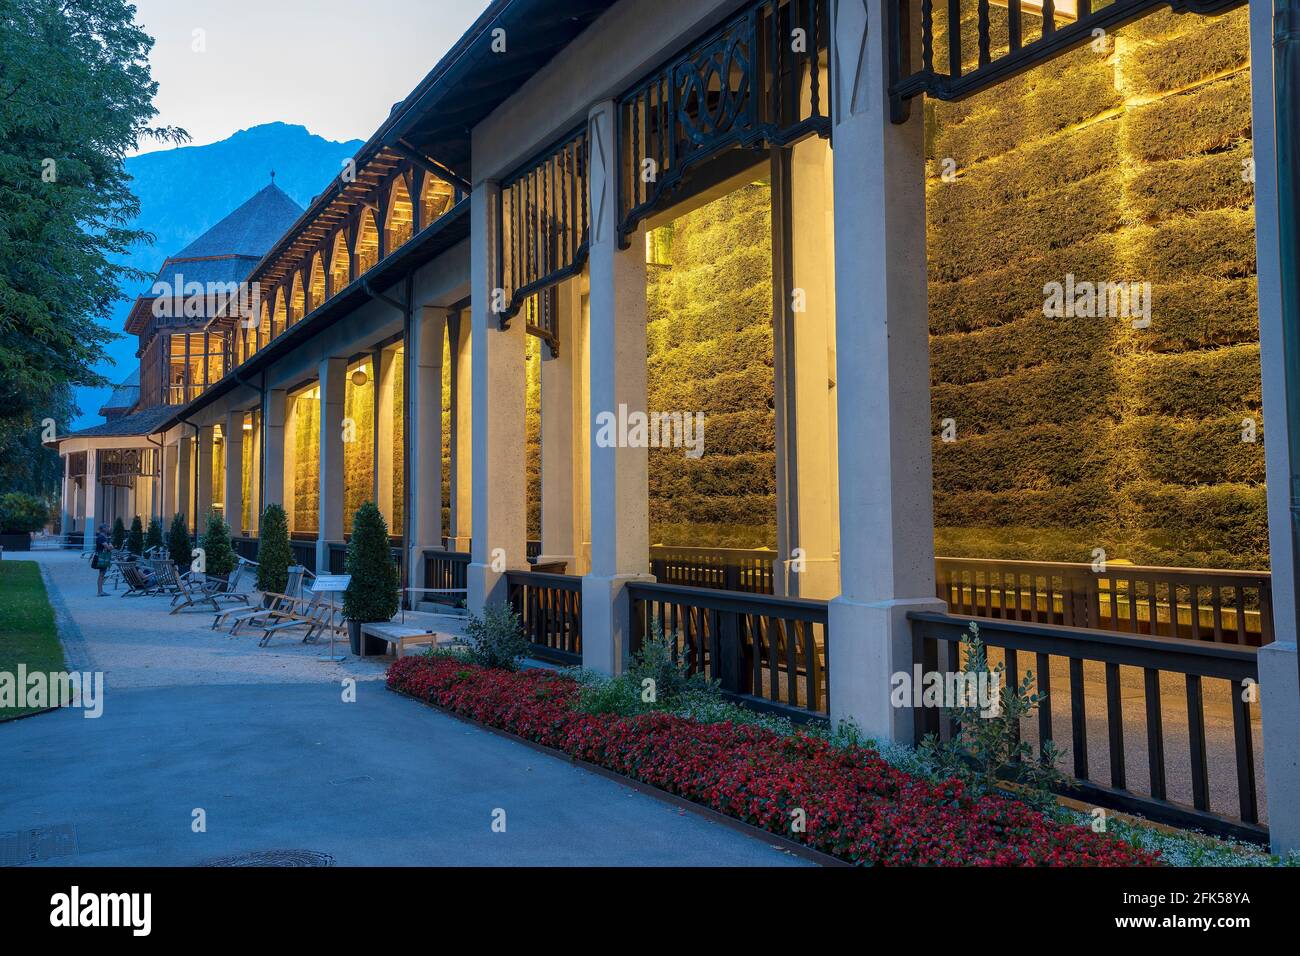 das beleuchtete Gradierhaus im Kurgarten von Bad Reichenhall zur blauen Stunde der einsetzenden Nacht Stock Photo